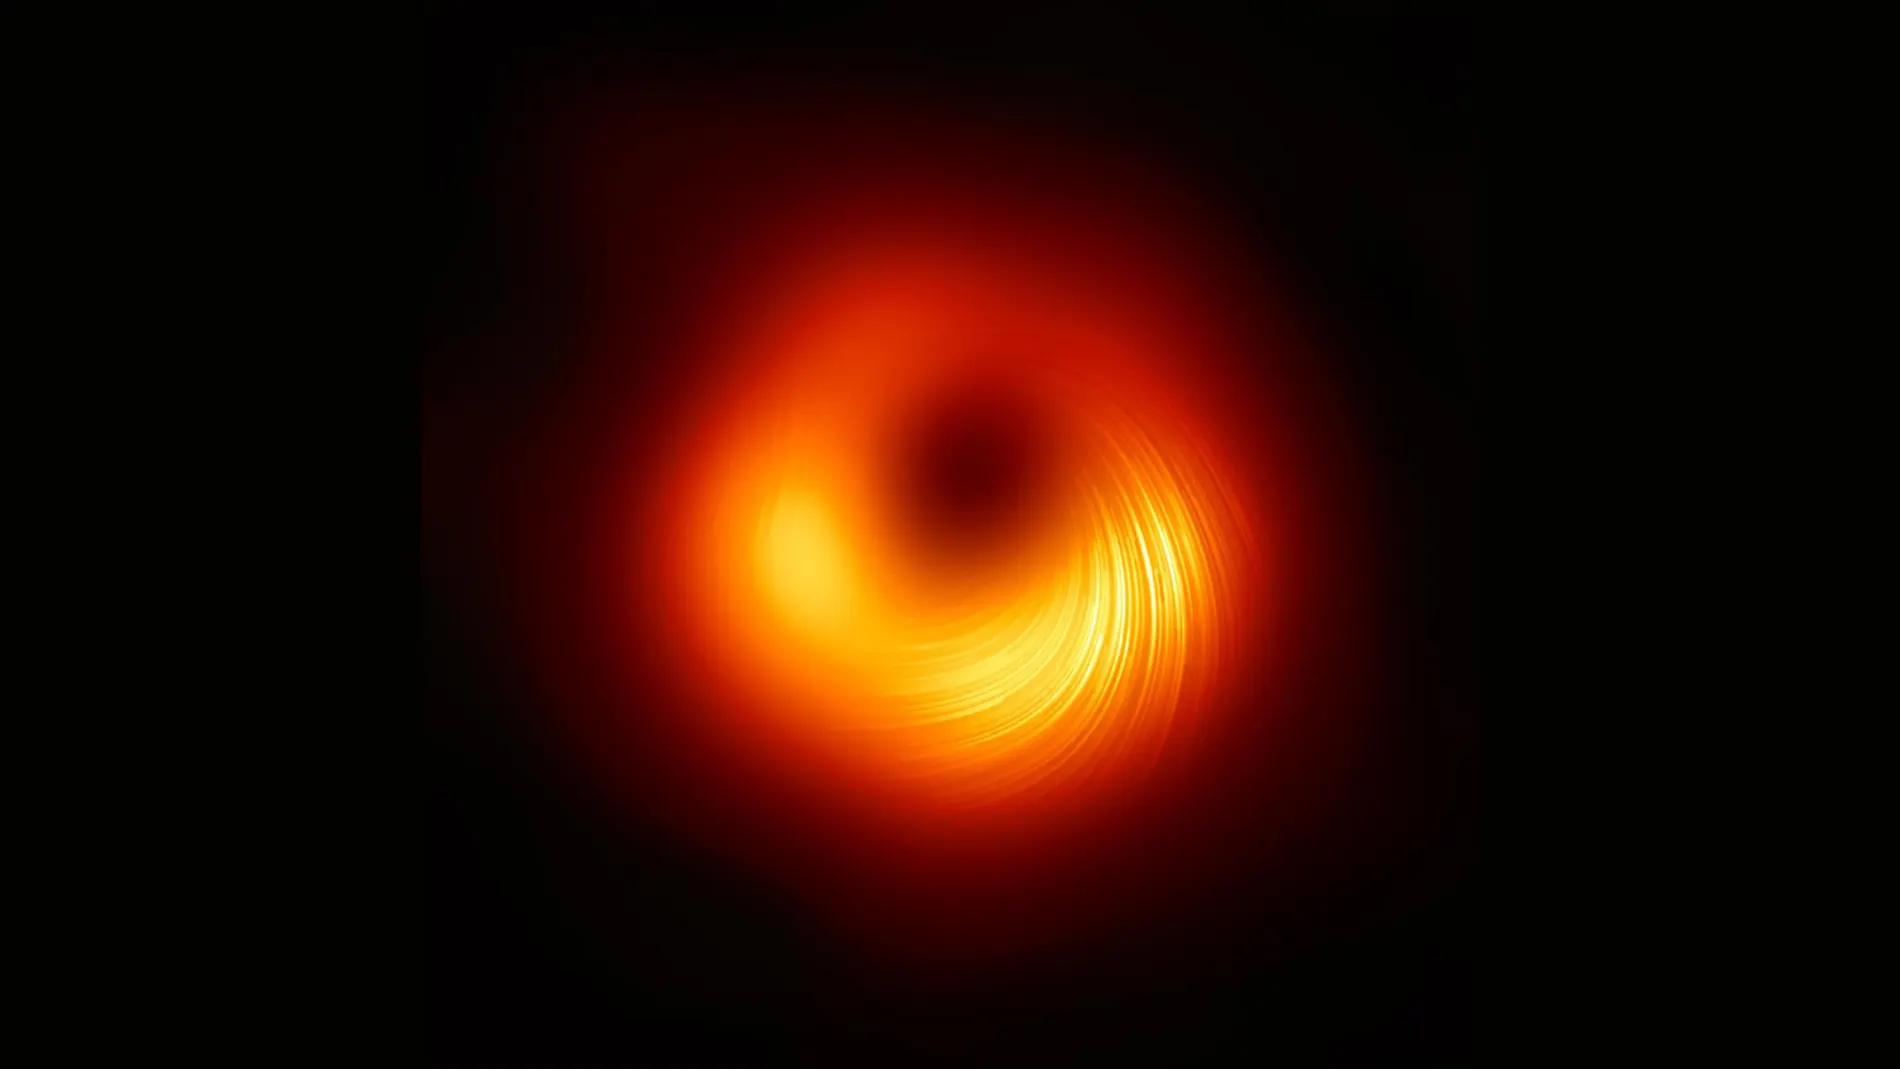 Una vista del agujero negro supermasivo M87 en luz polarizada: las líneas marcan la orientación de la polarización, que está relacionada con el campo magnético alrededor de la sombra del agujero negro.